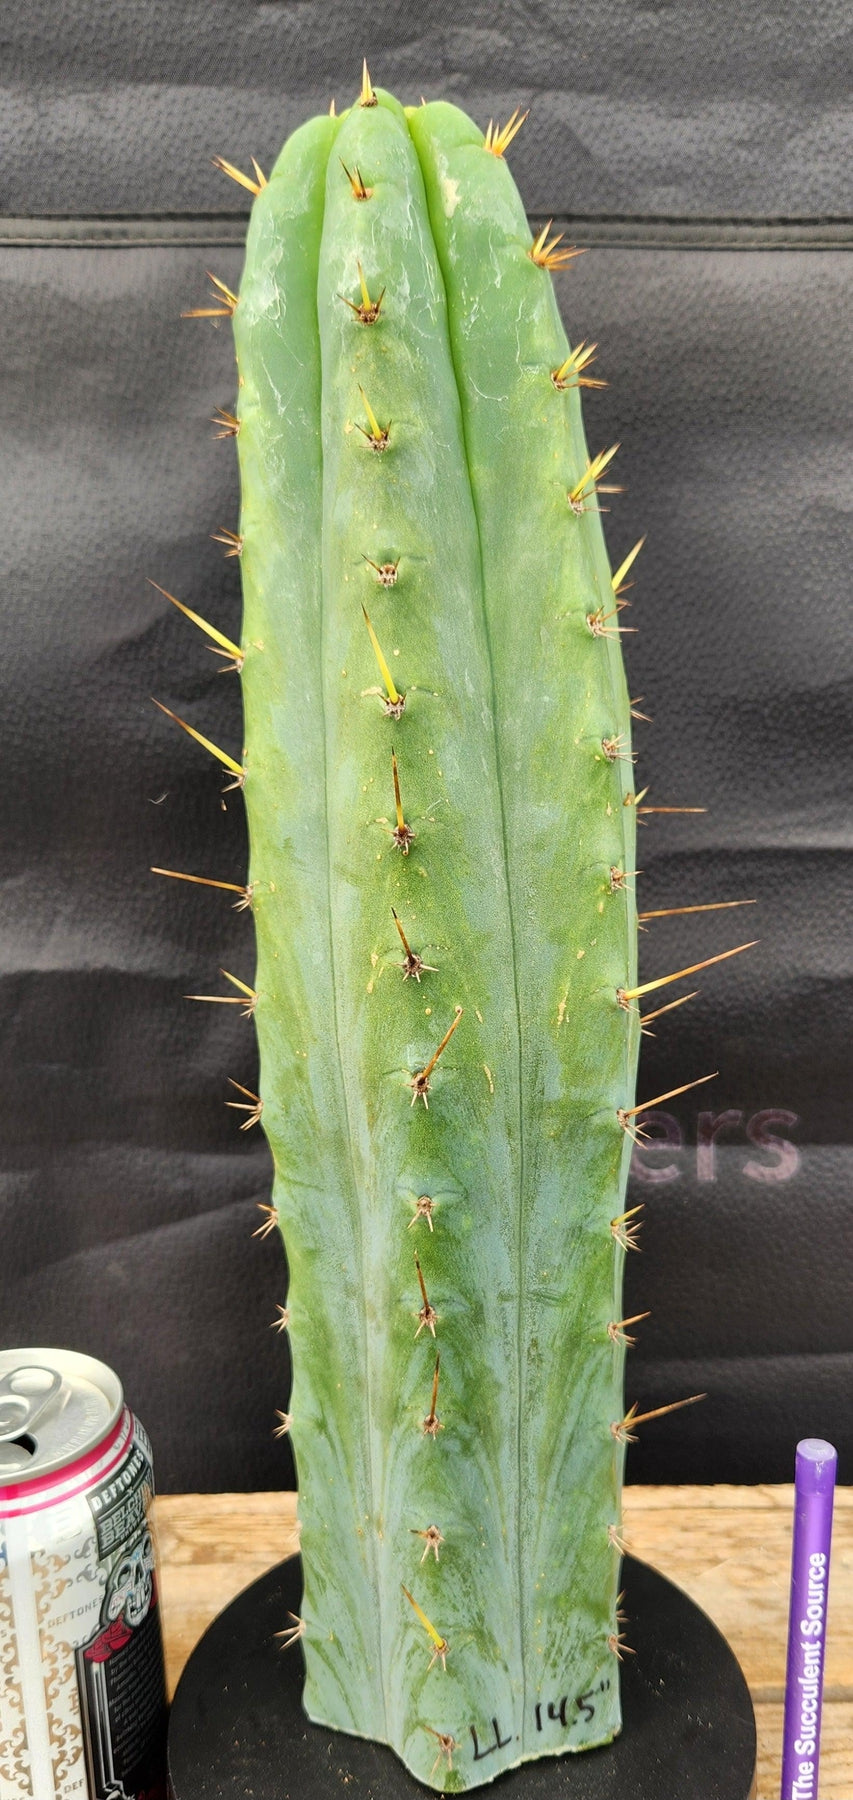 #EC55 EXACT Trichocereus "Lost Label" Three Pack Bargain Cactus Cutting Lot 10-14"-Cactus - Large - Exact-The Succulent Source